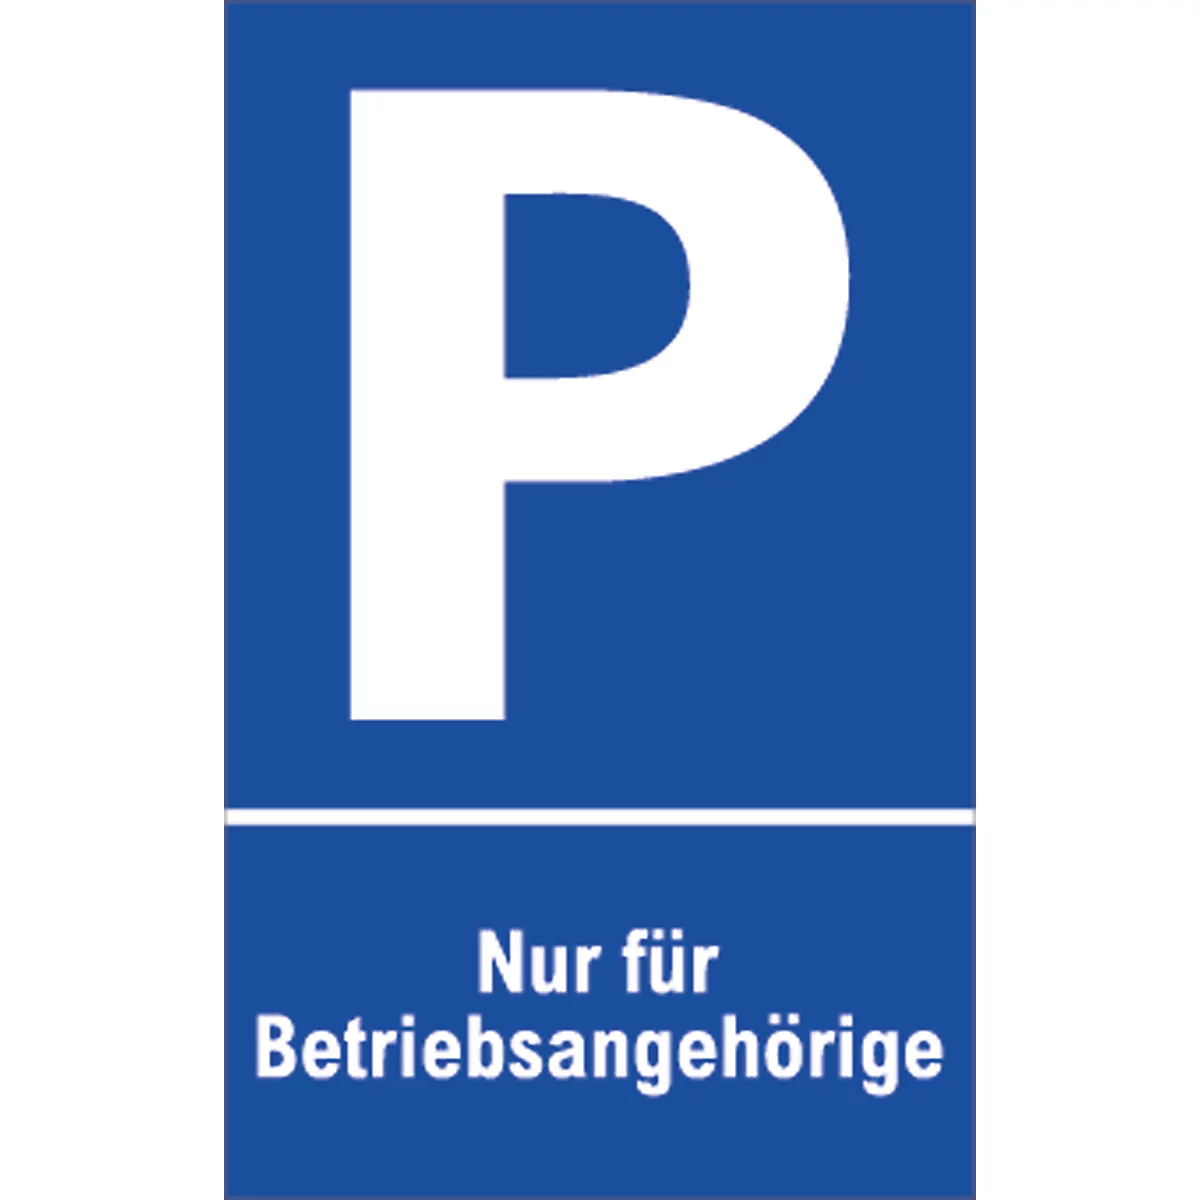 Señal de aparcamiento, "Nur für Betriebsangehörige"